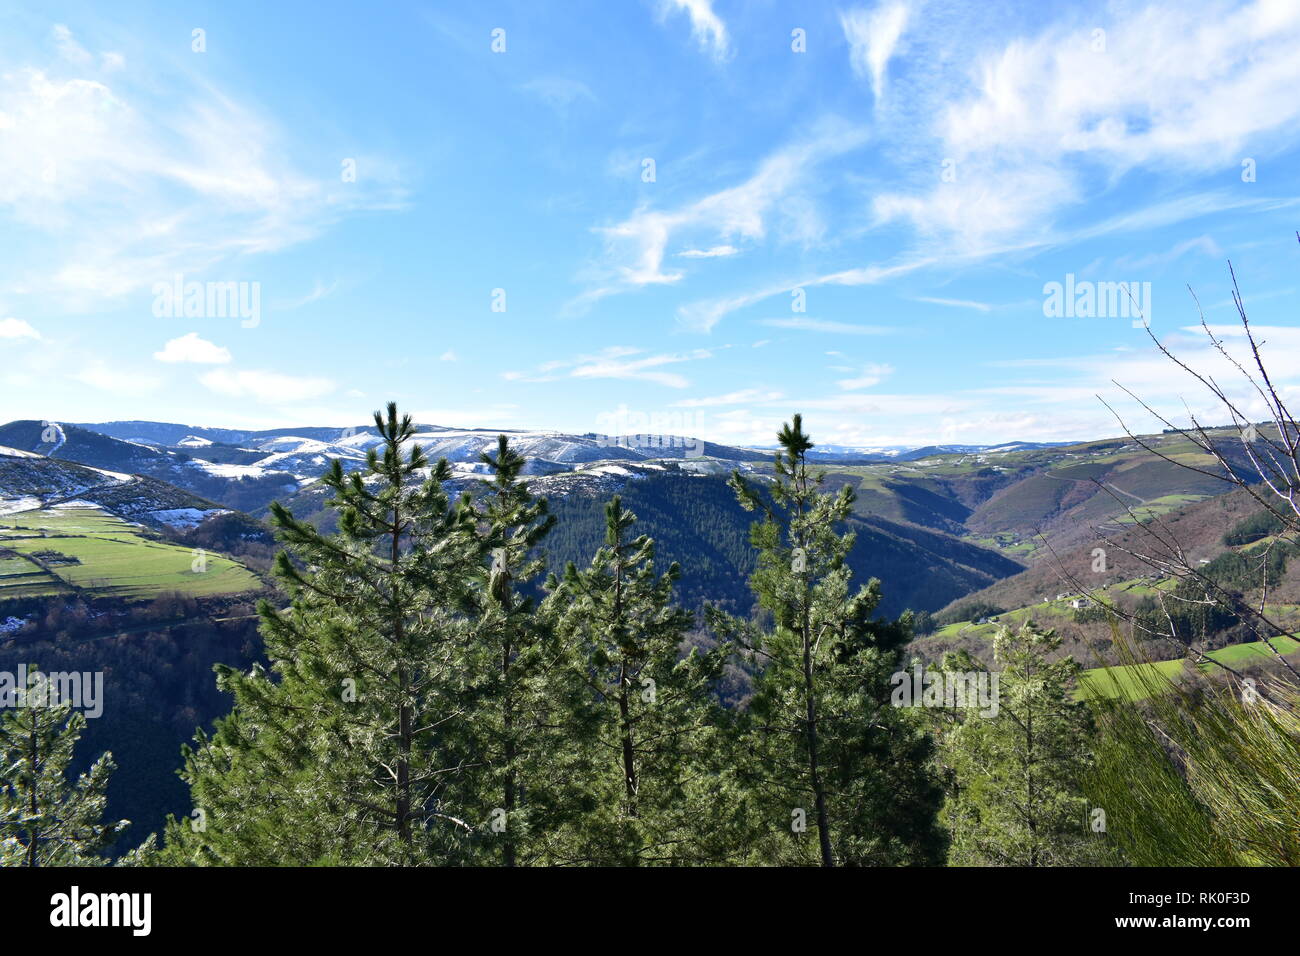 Winterlandschaft mit Schnee bedeckten Bergen und Pinien. Tal und Hänge mit Wald und grünen Wiesen. Ancares Region, Provinz Lugo, Galizien, Spanien. Stockfoto